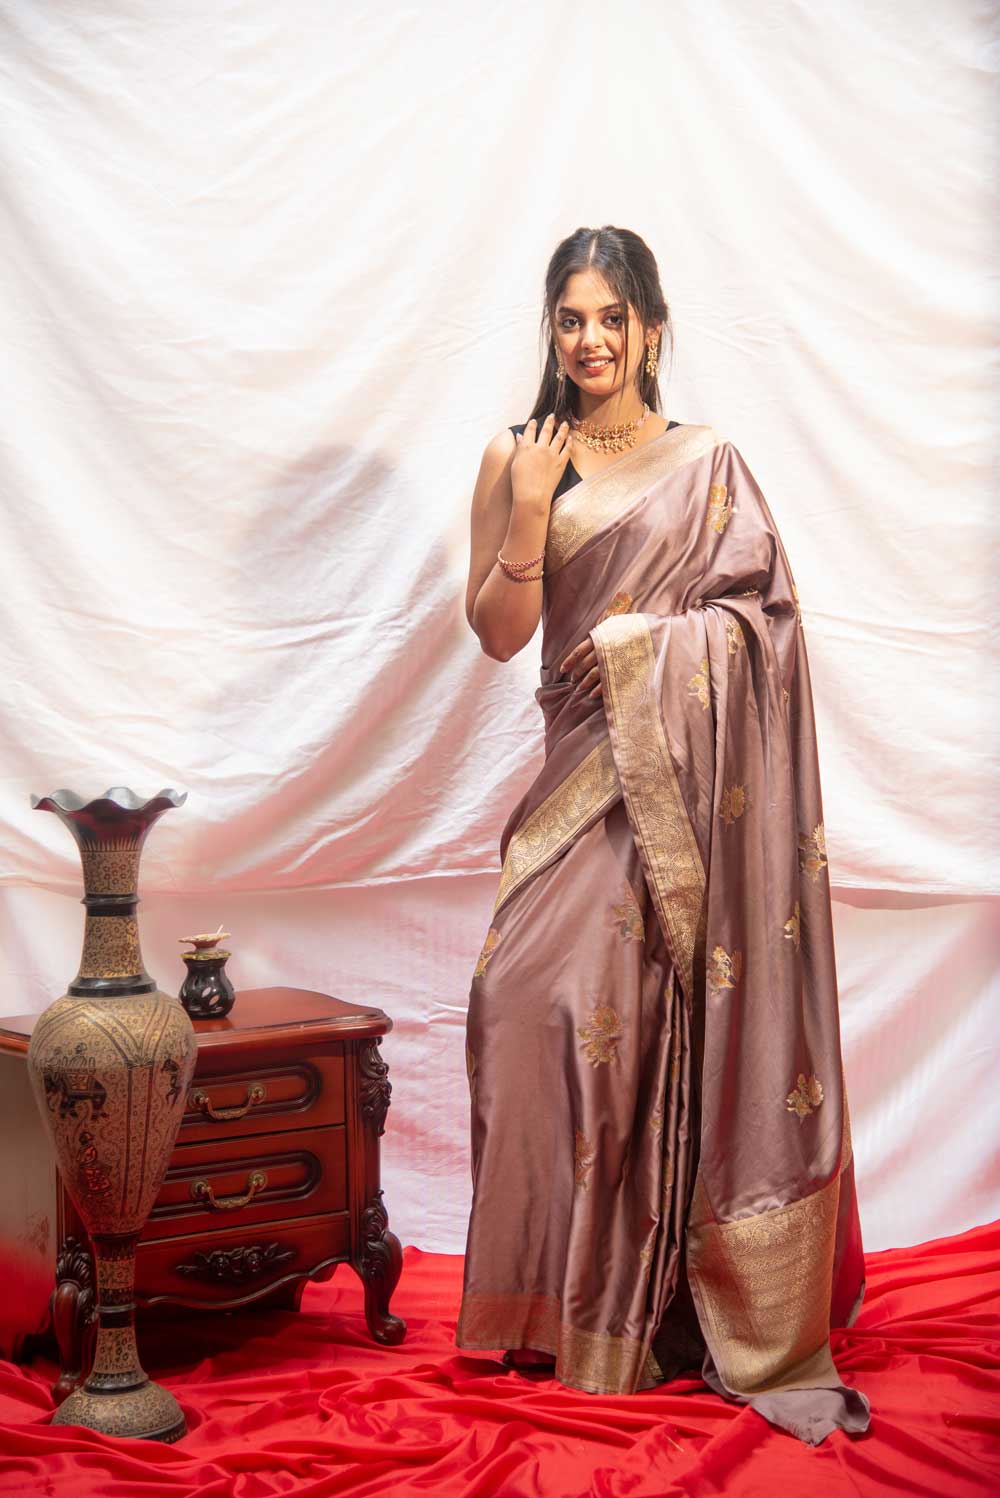 Nude Brown Mushru Satin Banarasi Handloom Saree With Meenakari Boota